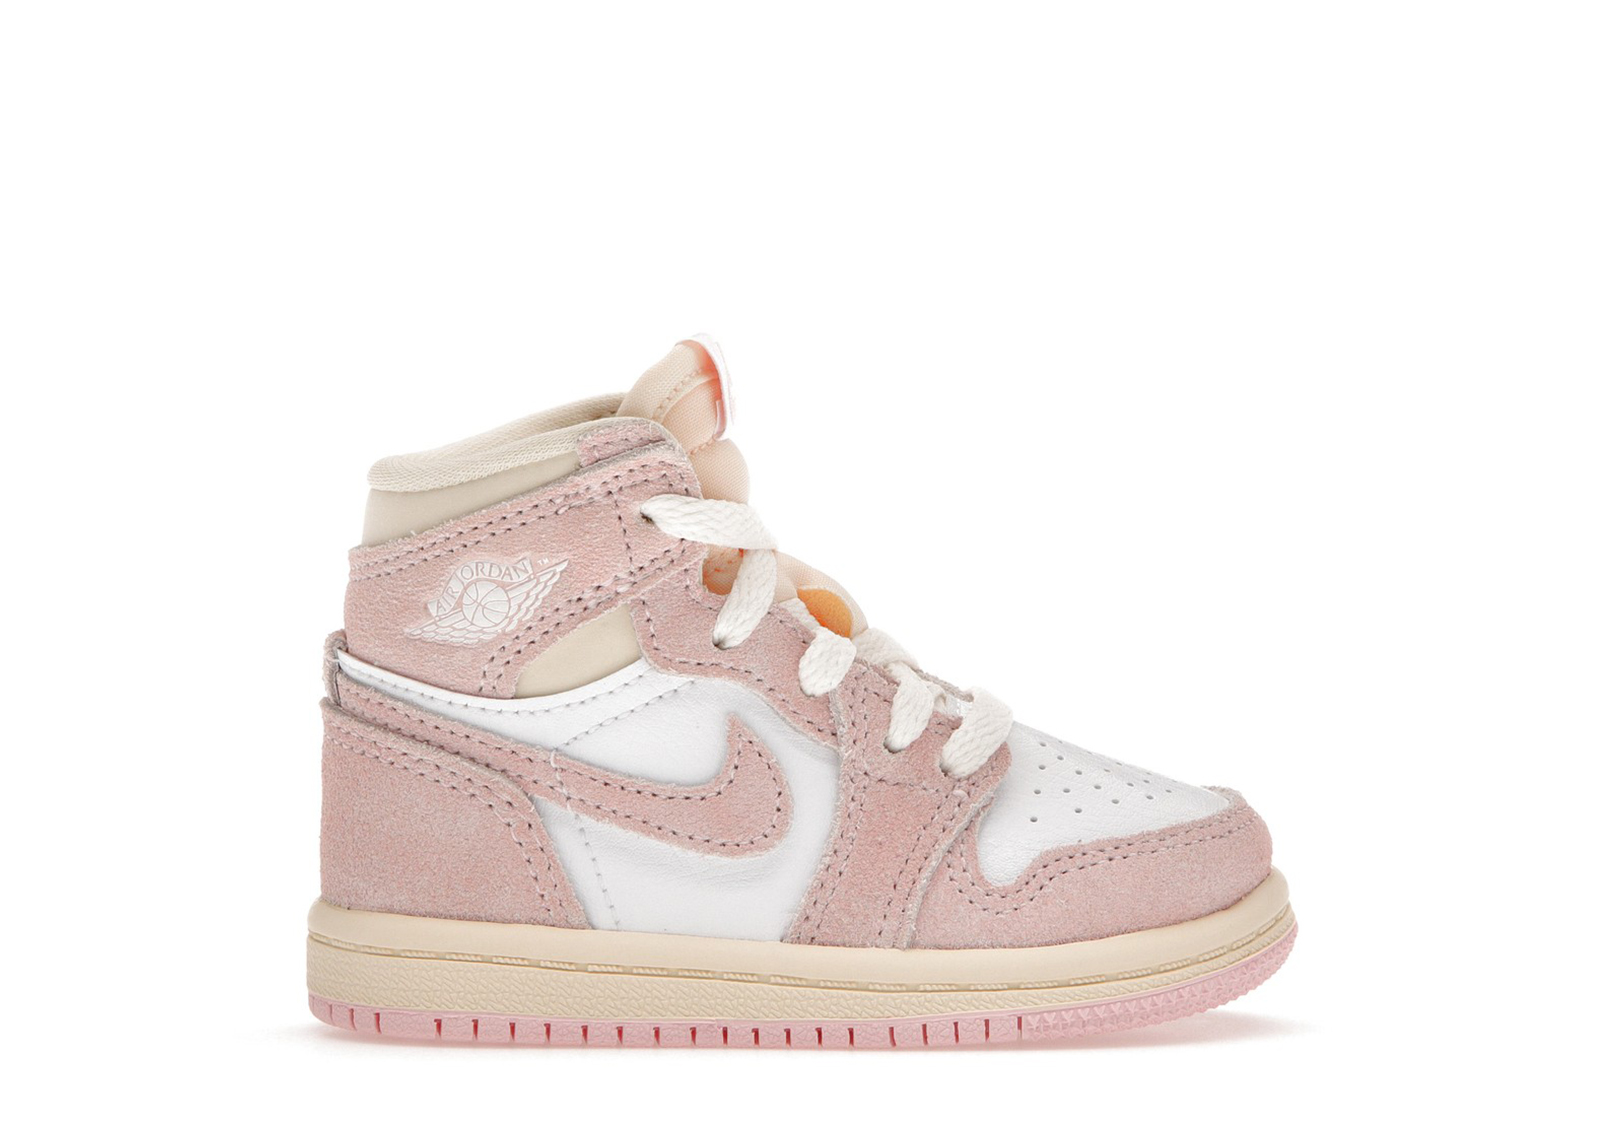 Jordan 1 Retro High OG Washed Pink (TD) Toddler - FD2598-600 - US